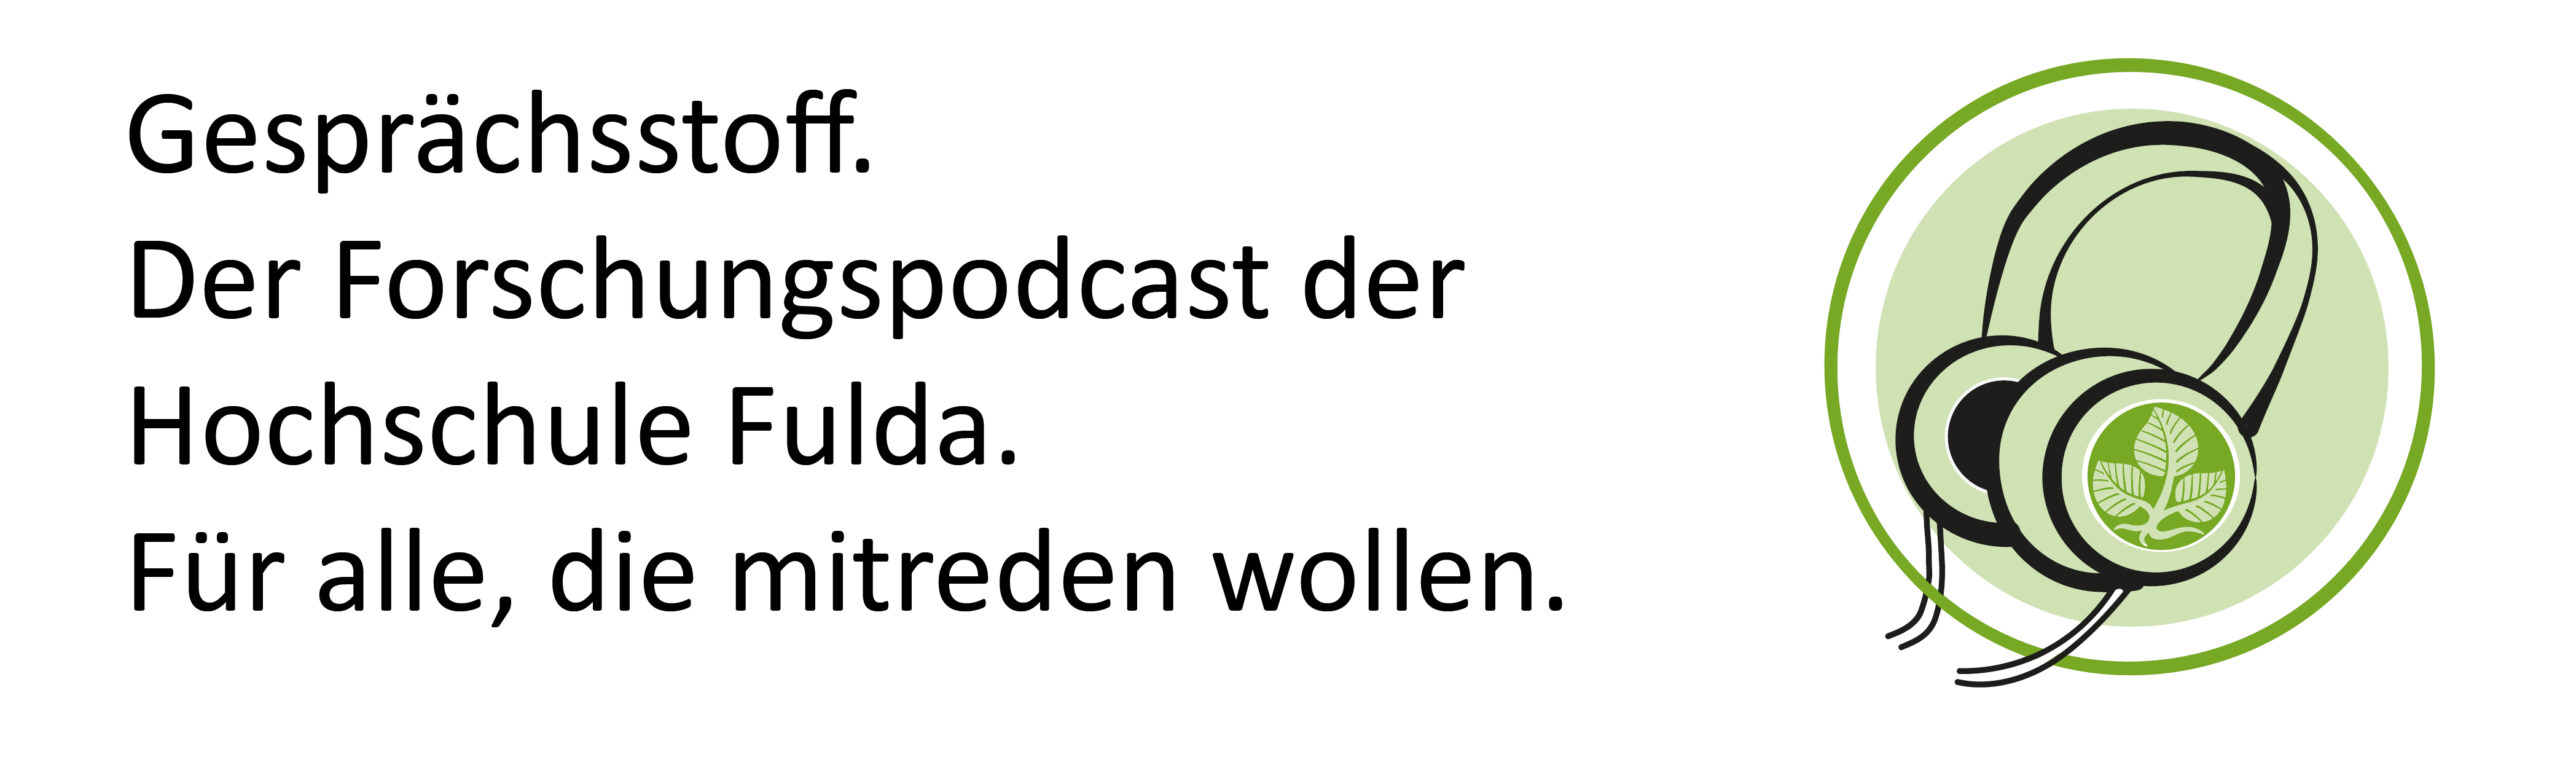 Das Logo des Podcasts Gesprächsstoff